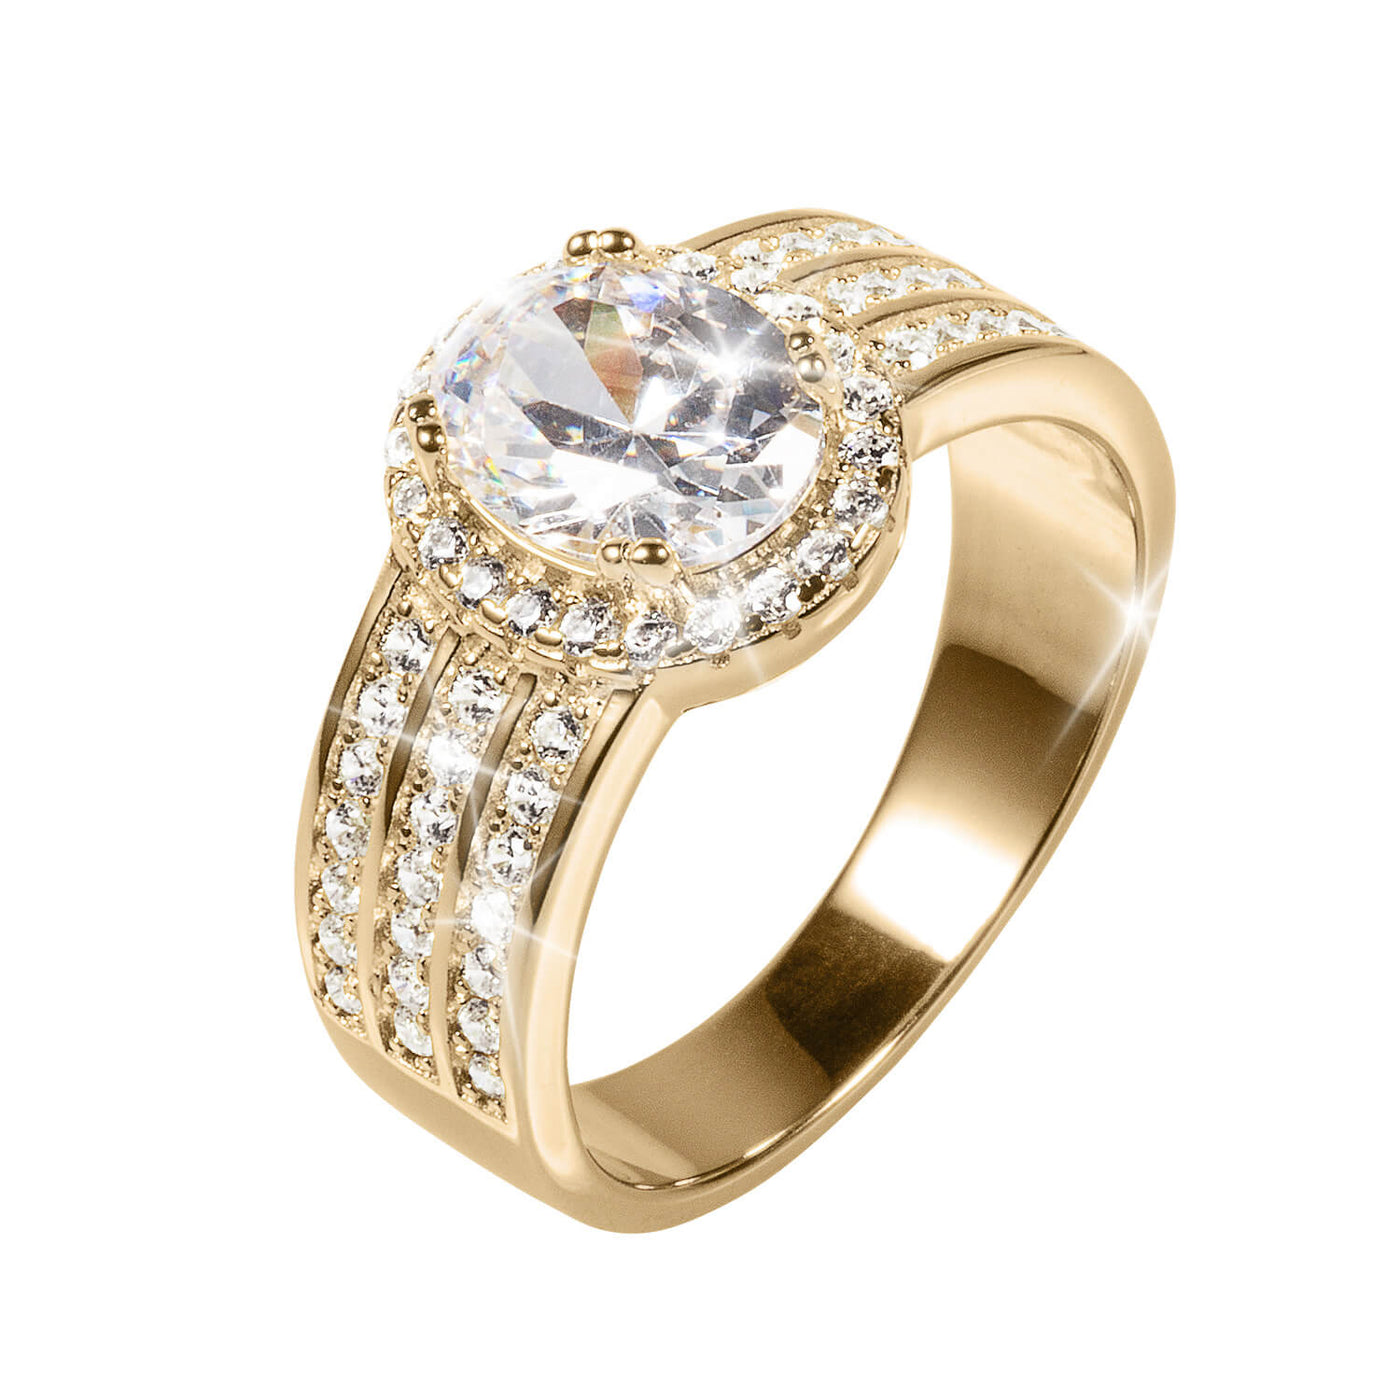 Daniel Steiger Golden Aura Ladies Ring